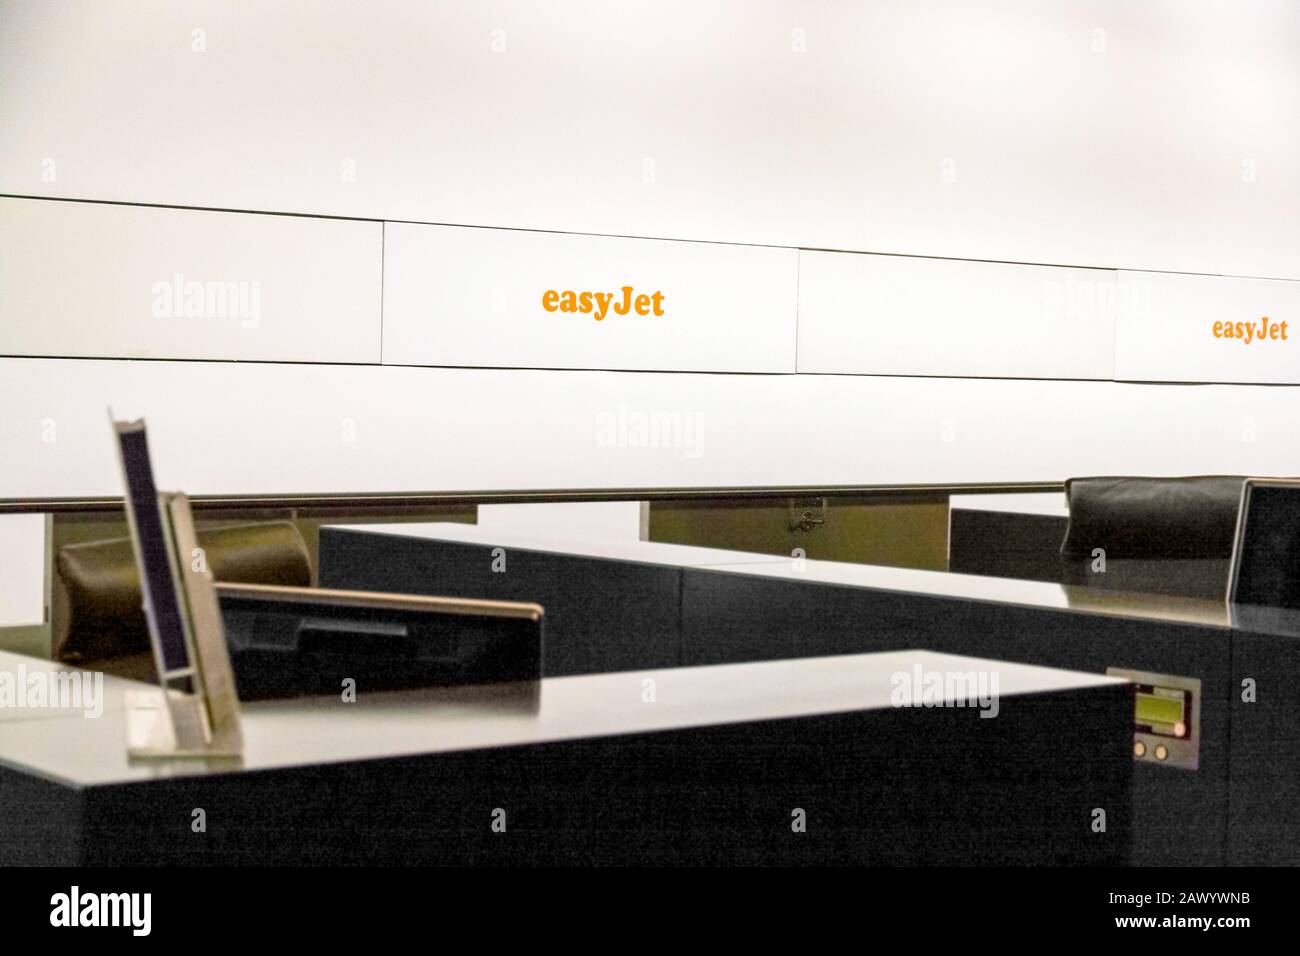 Zurigo, Svizzera - 11 giugno 2017: Banco di check-in della compagnia aerea easyjet all'aeroporto di Zurigo Foto Stock